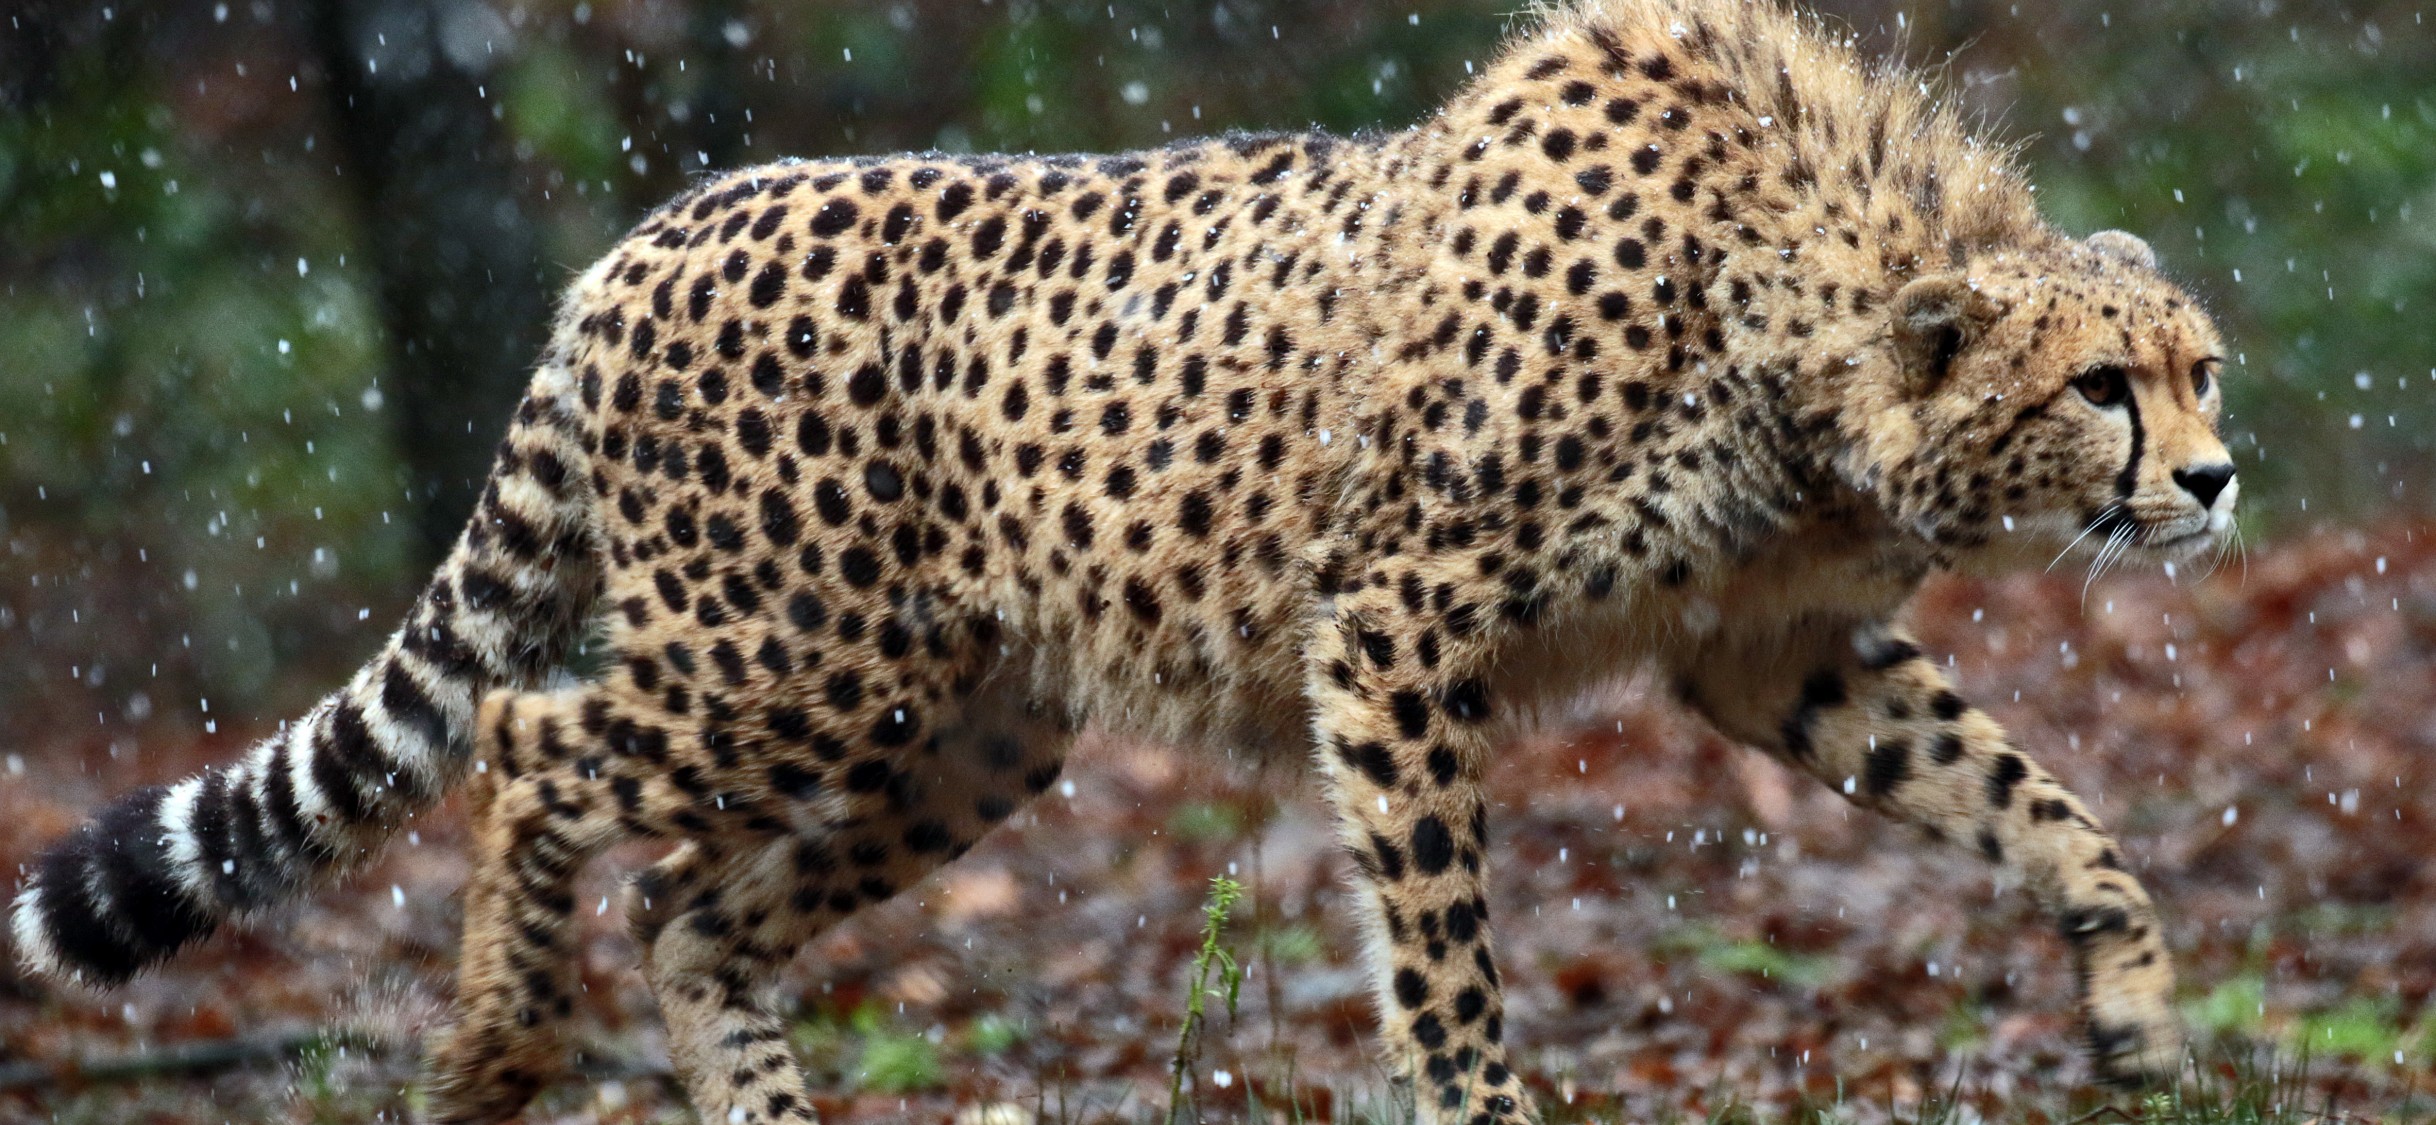 Cheetah 4k , HD Wallpaper & Backgrounds